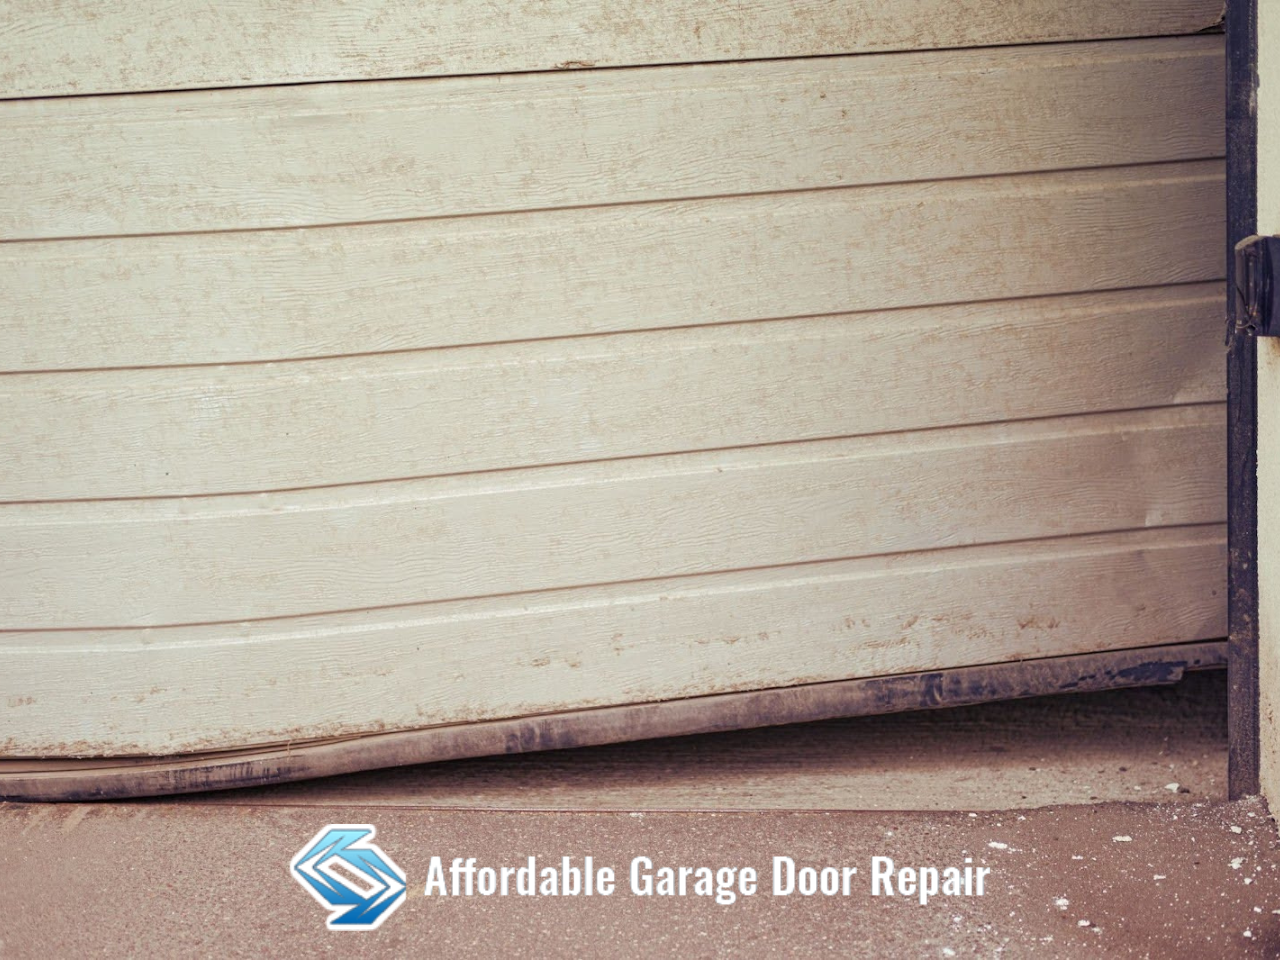 How to Fix an Uneven Garage Door